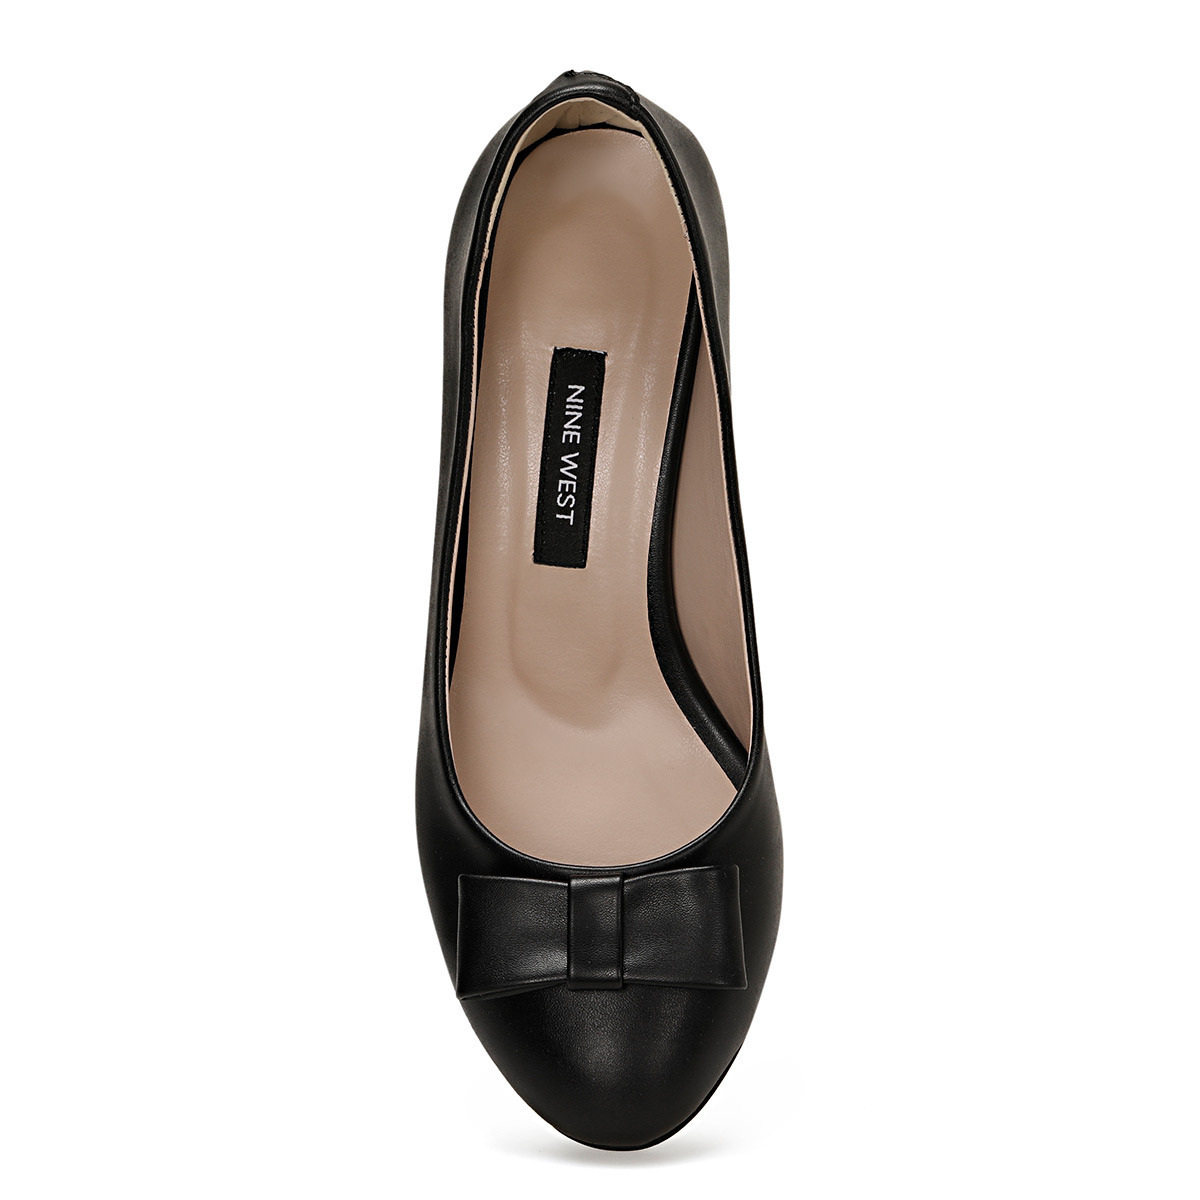 Flo LENIO Siyah Kadın Klasik Topuklu Ayakkabı. 4